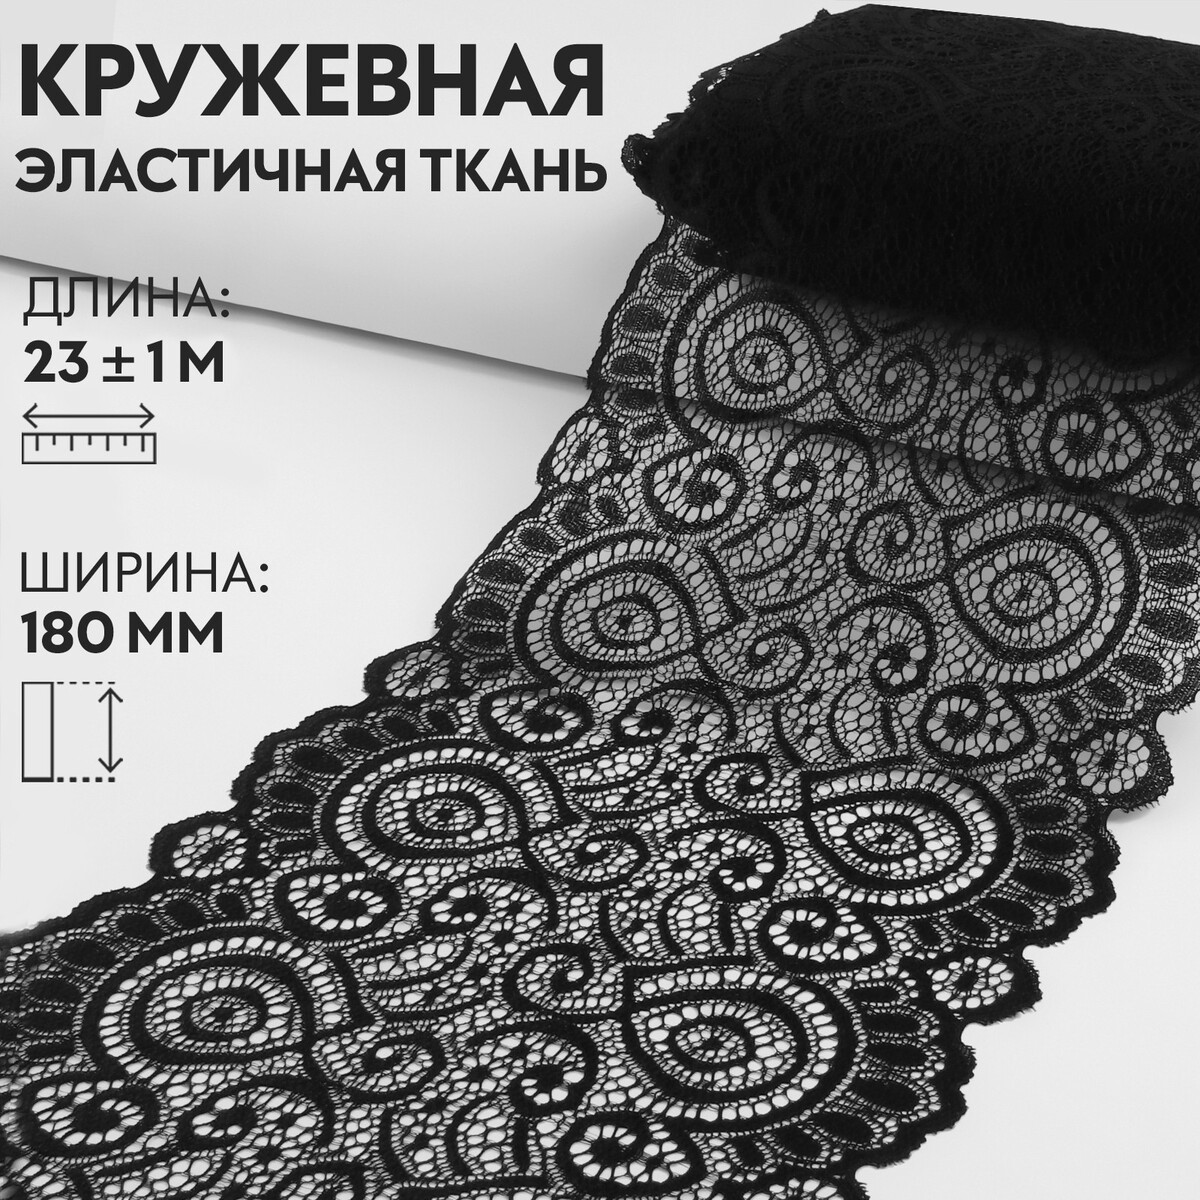 Кружевная эластичная ткань, 180 мм × 23 ± 1 м, цвет черный